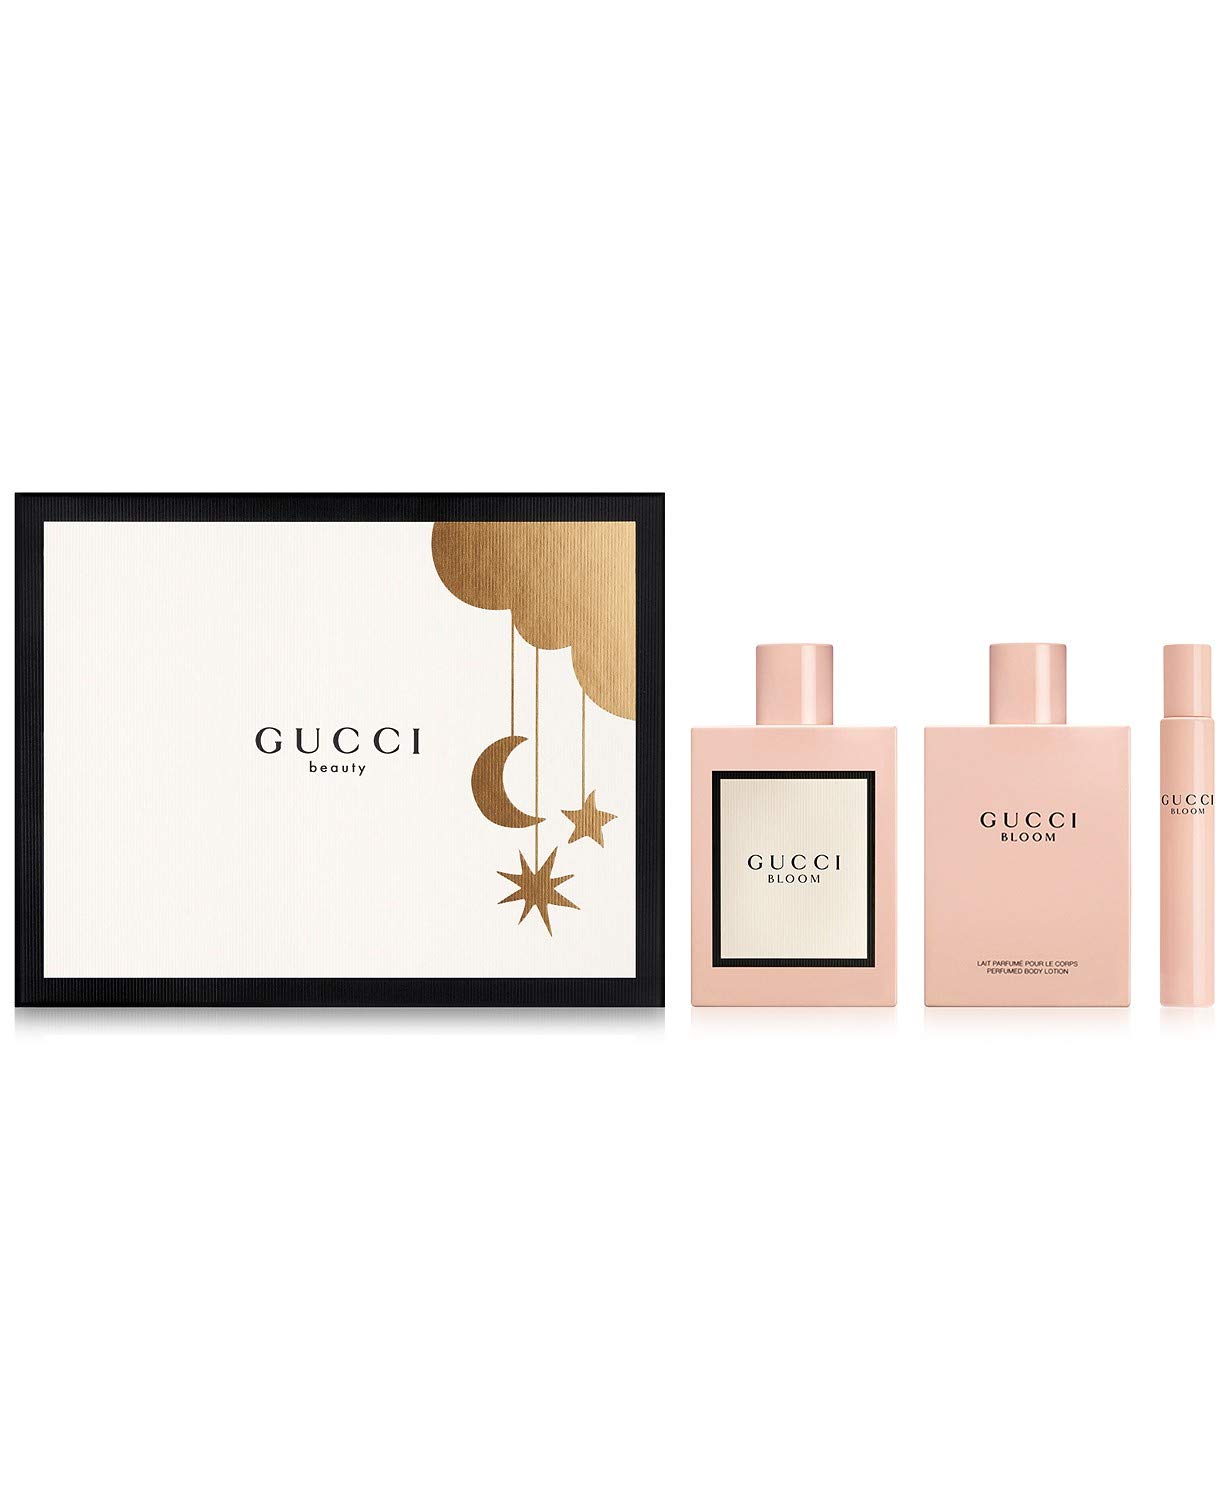 구찌 Gucci Bloom for Women 3 Piece Set Includes: 3.3 oz Eau de Parfum Spray + 3.3 oz Body Lotion + 0.25 oz Eau de Parfum Fragrance Rollerball